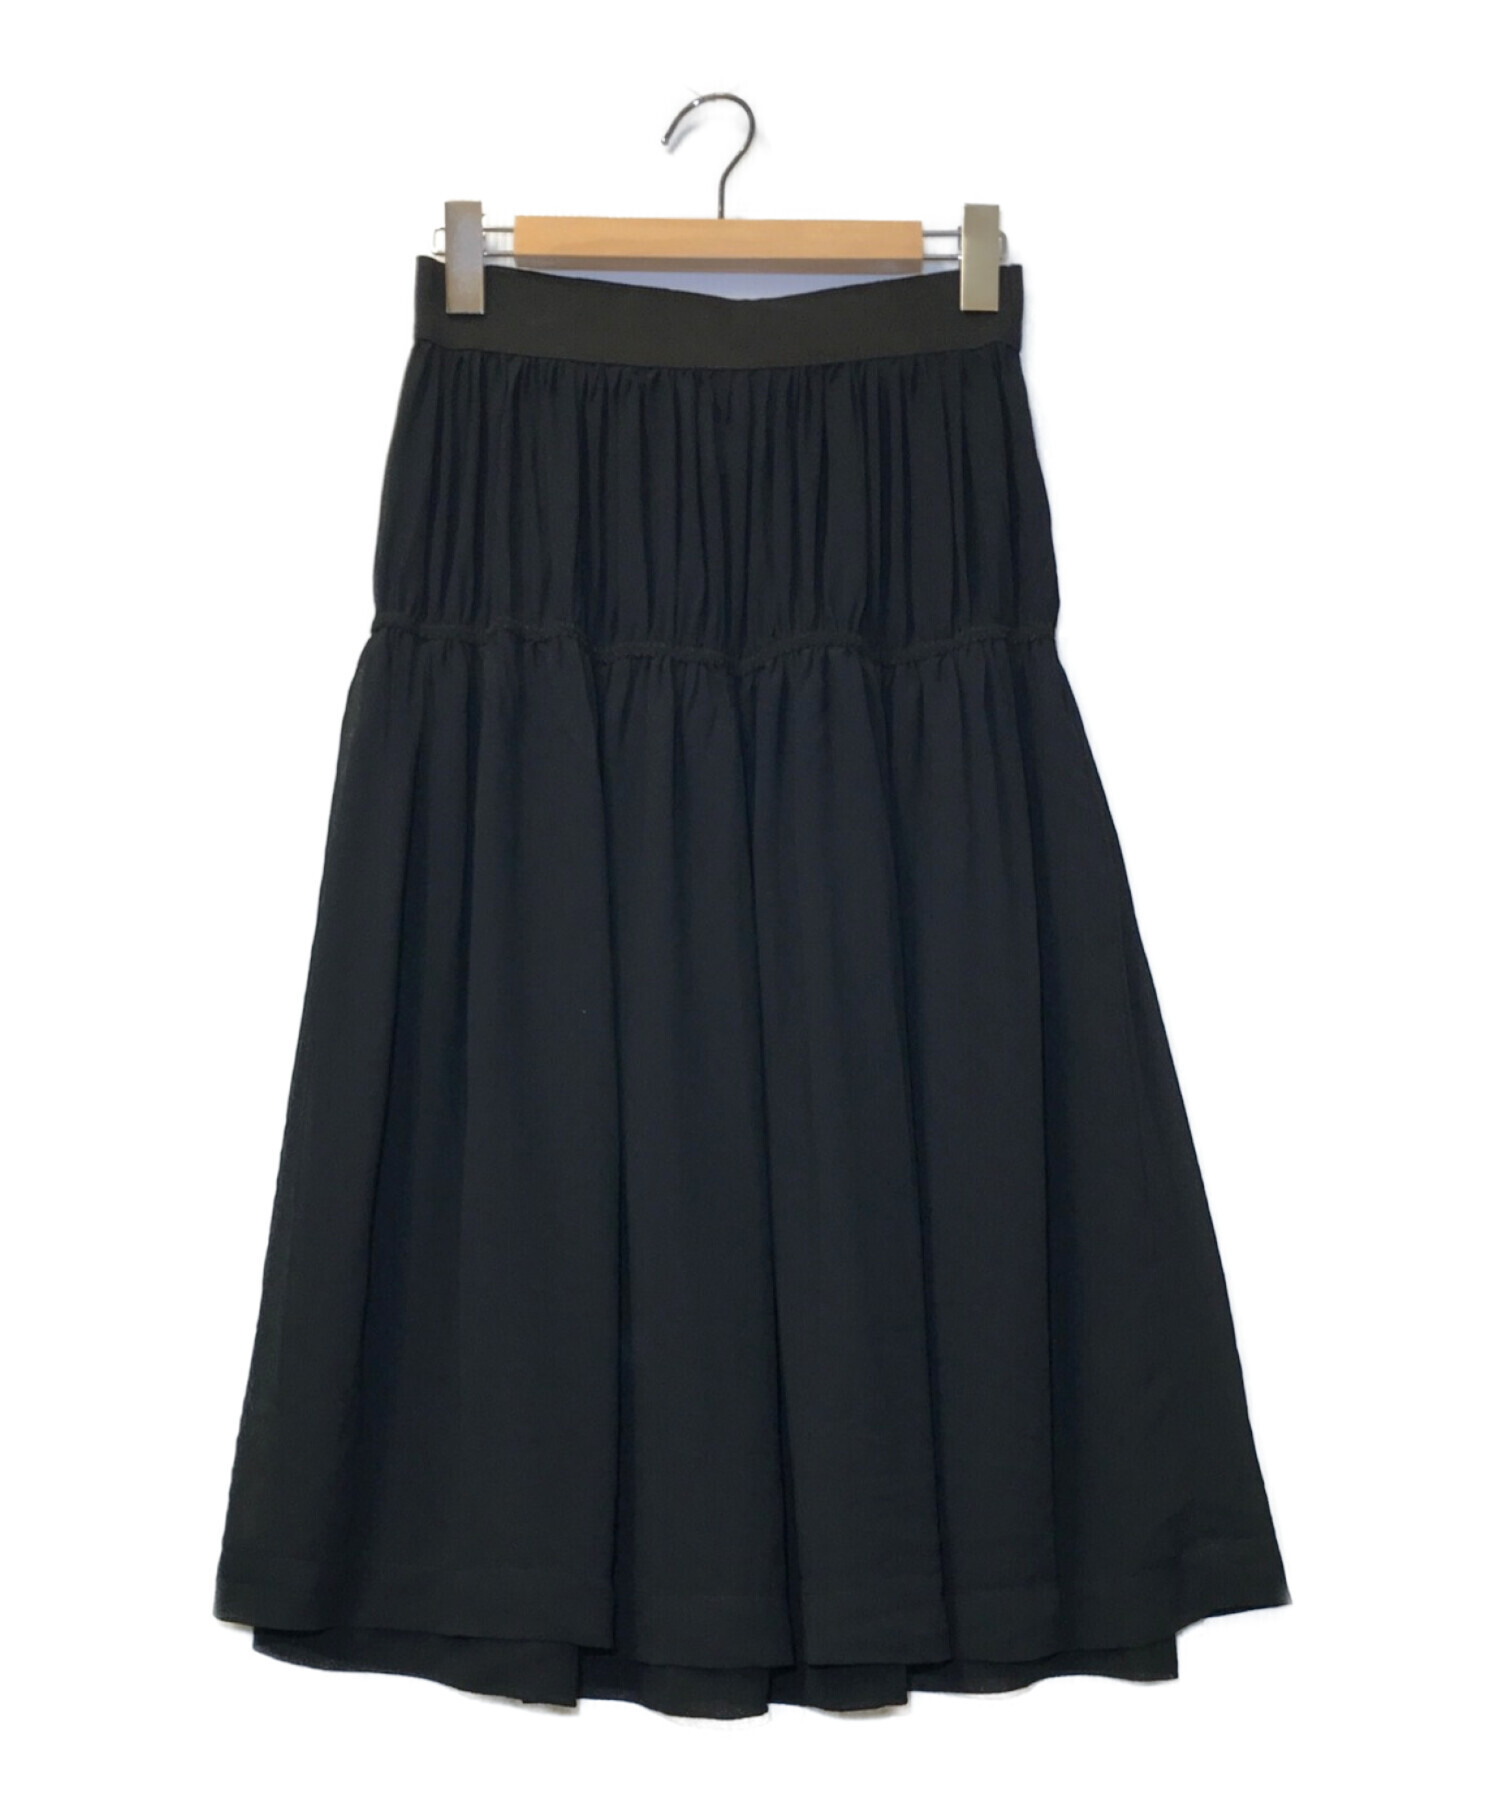 COMME des GARCONS (コムデギャルソン) 製品染めシースルースカート ブラック サイズ:S